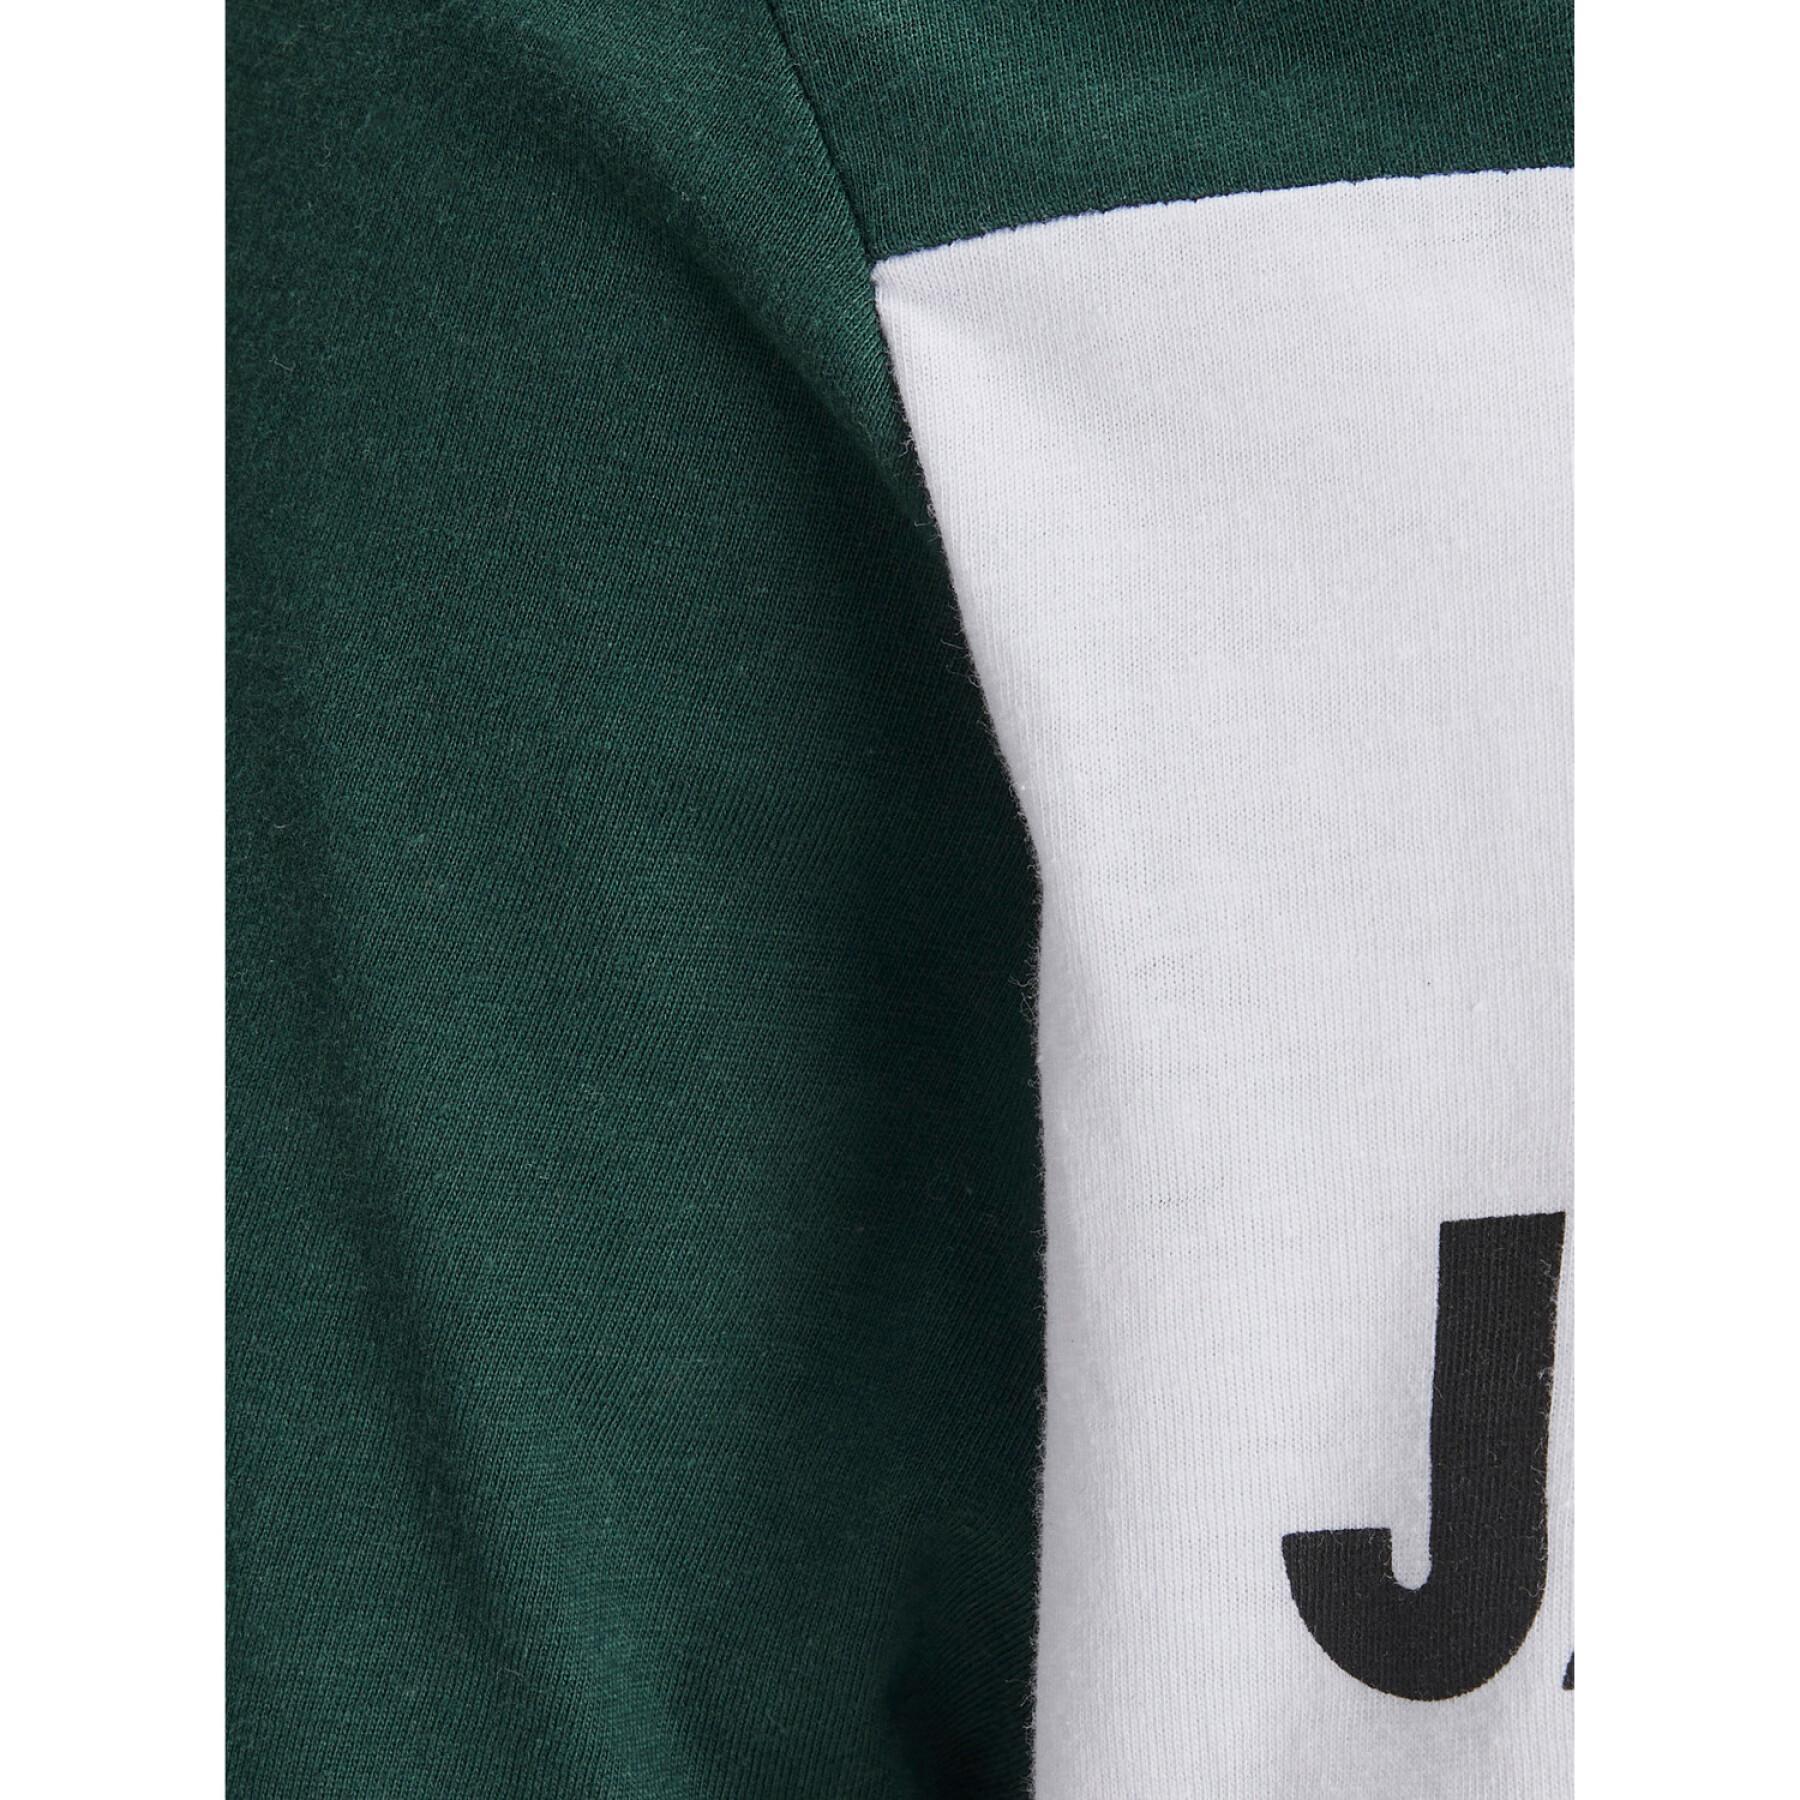 T-shirt à manches courtes Jack & Jones Jjelogo